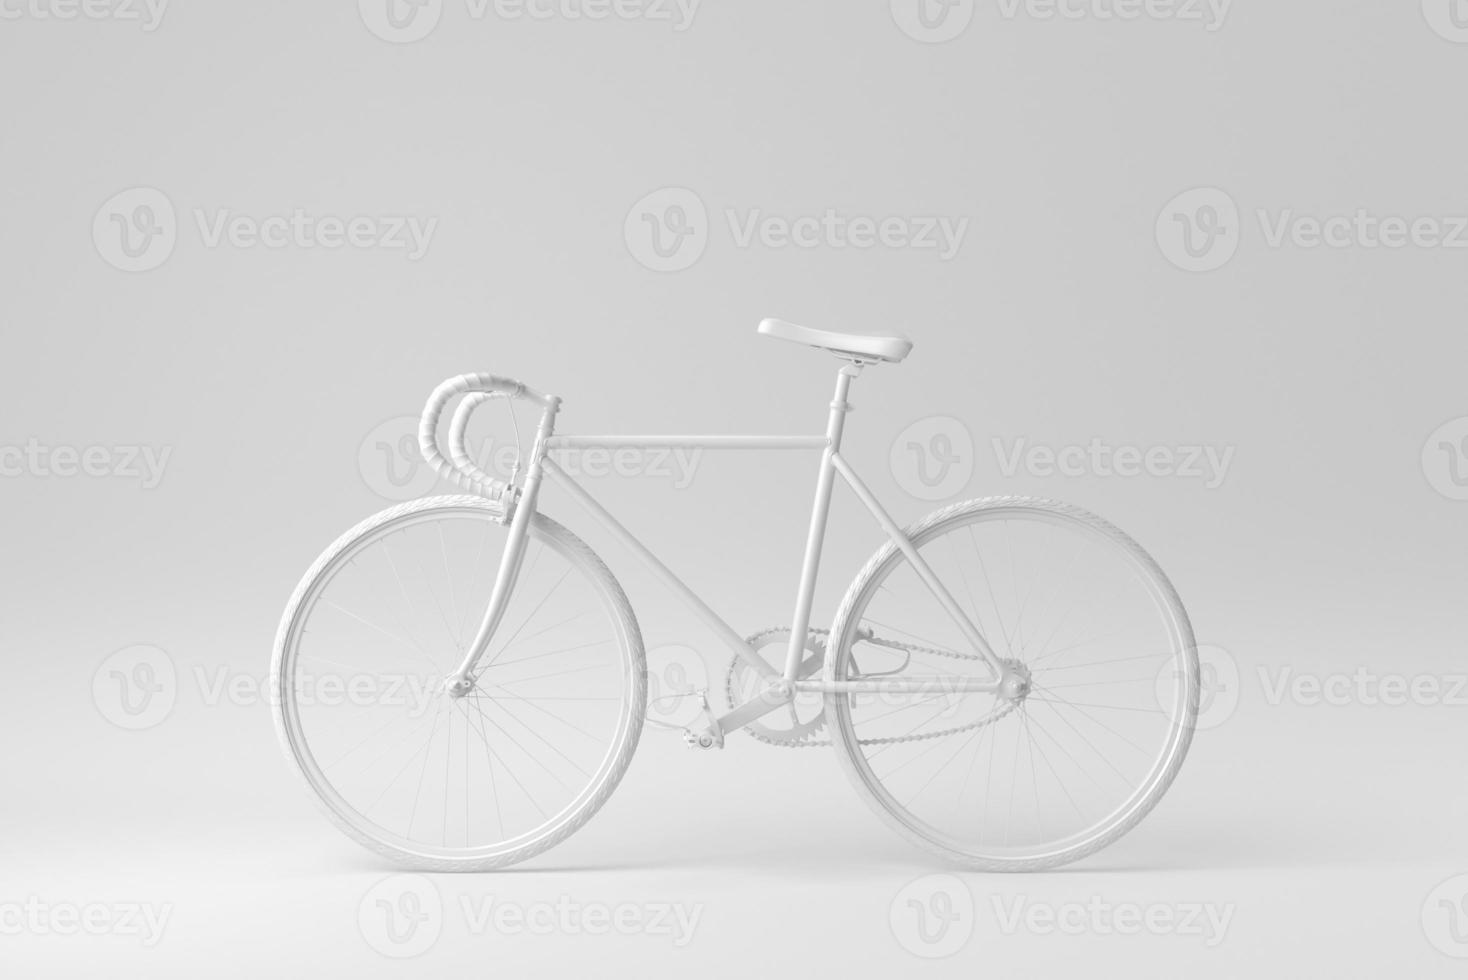 landsvägscykel på vit bakgrund. formgivningsmall, mock up. 3d rendering. foto